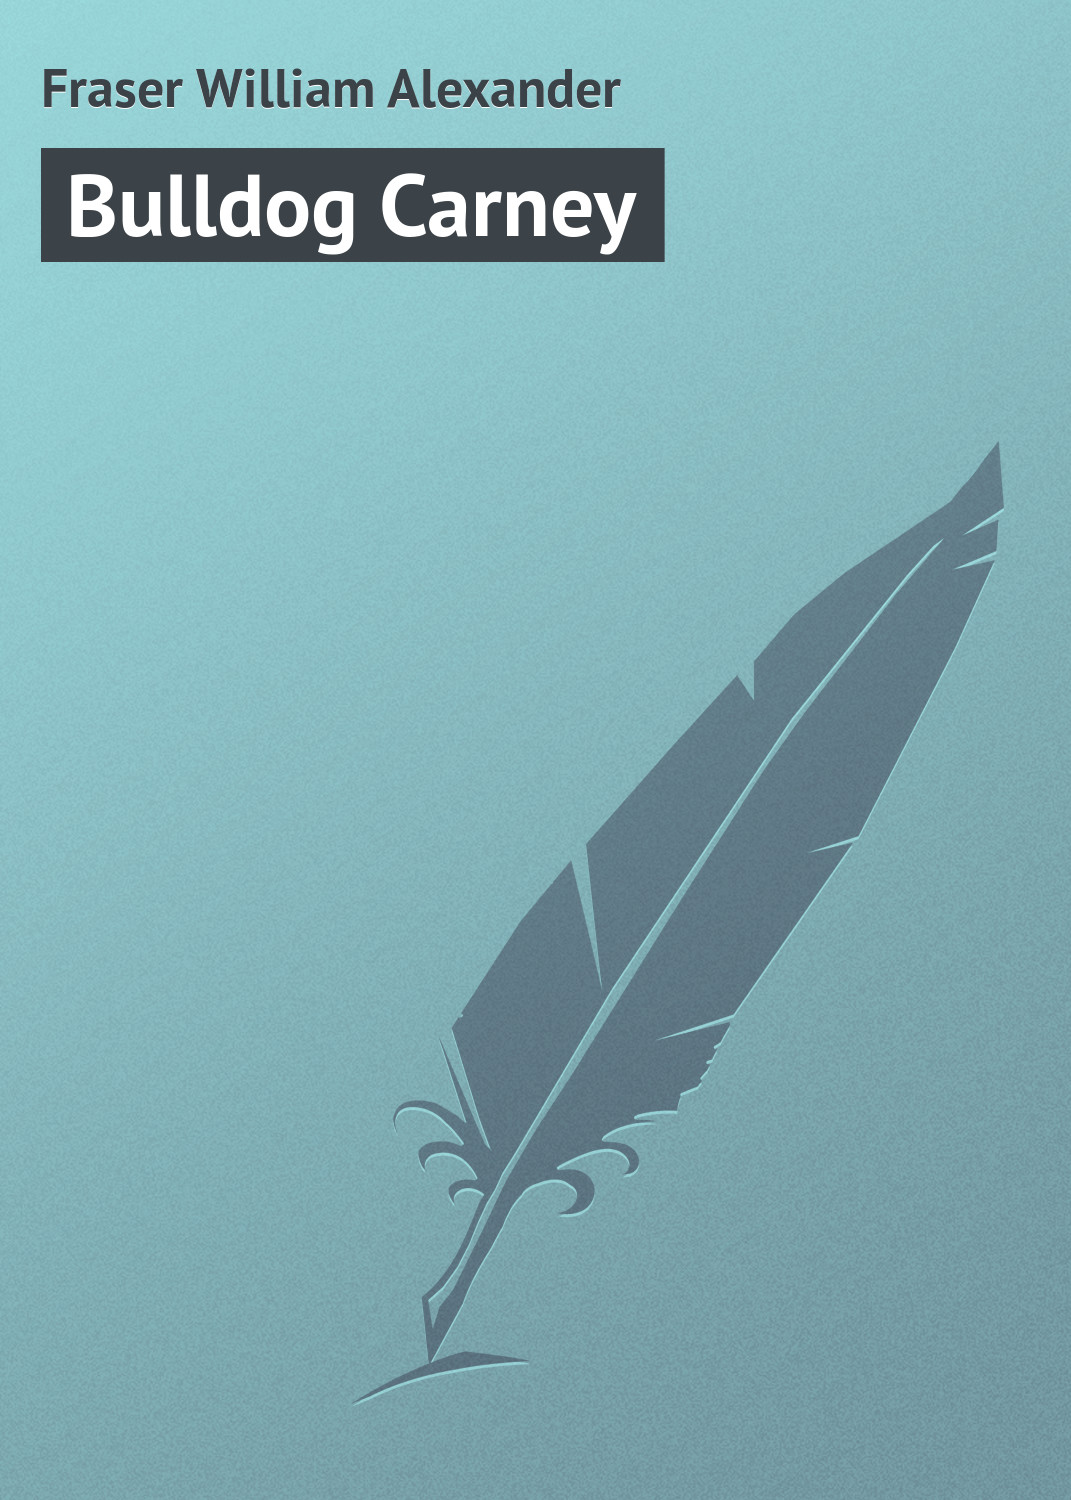 Книга Bulldog Carney из серии , созданная William Fraser, может относится к жанру Приключения: прочее, Зарубежная классика. Стоимость электронной книги Bulldog Carney с идентификатором 23165059 составляет 5.99 руб.